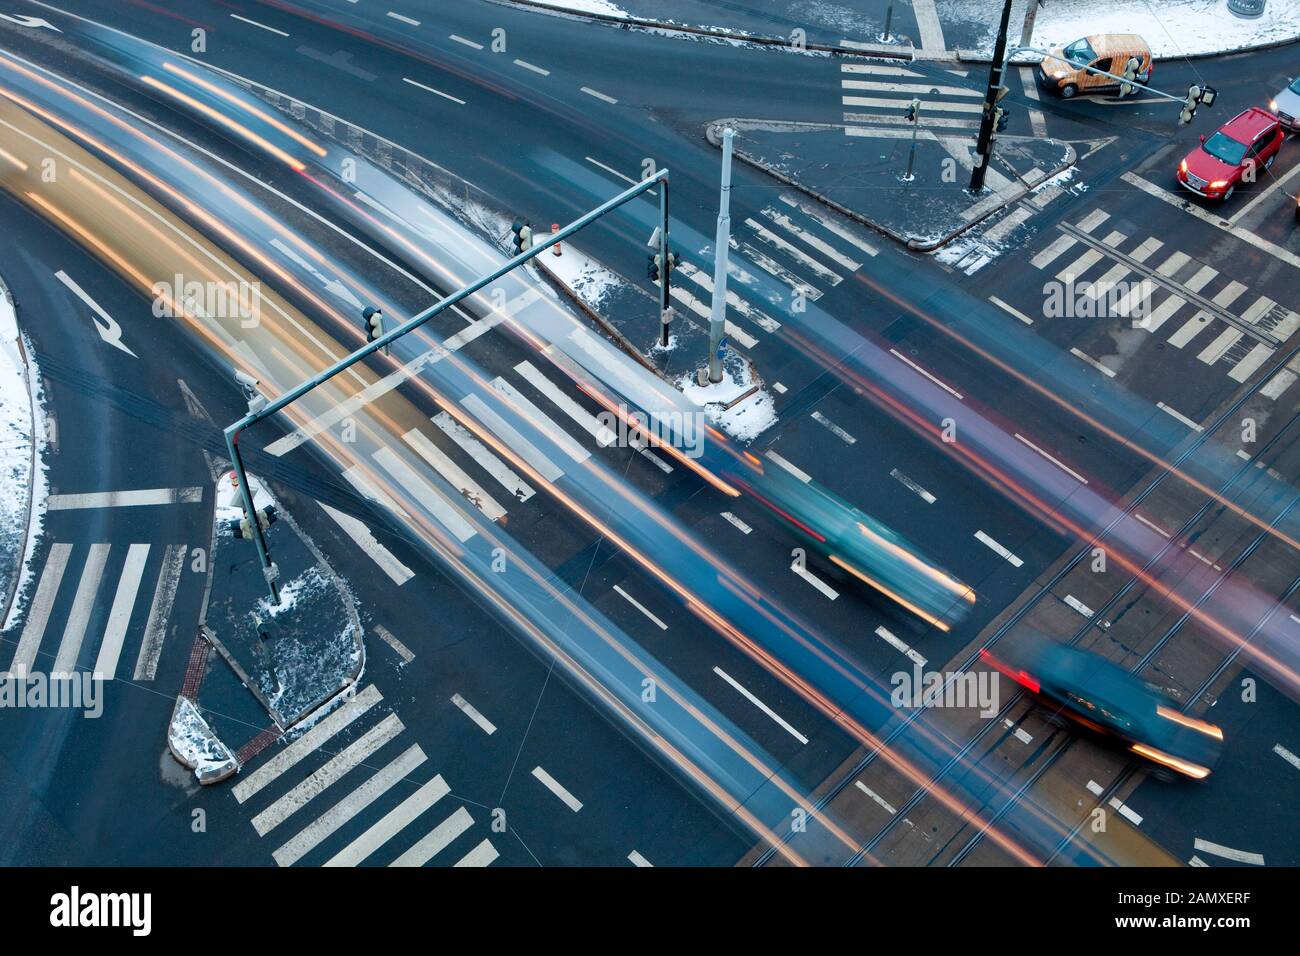 Praga - traffico all'incrocio - vista dall'alto Foto Stock